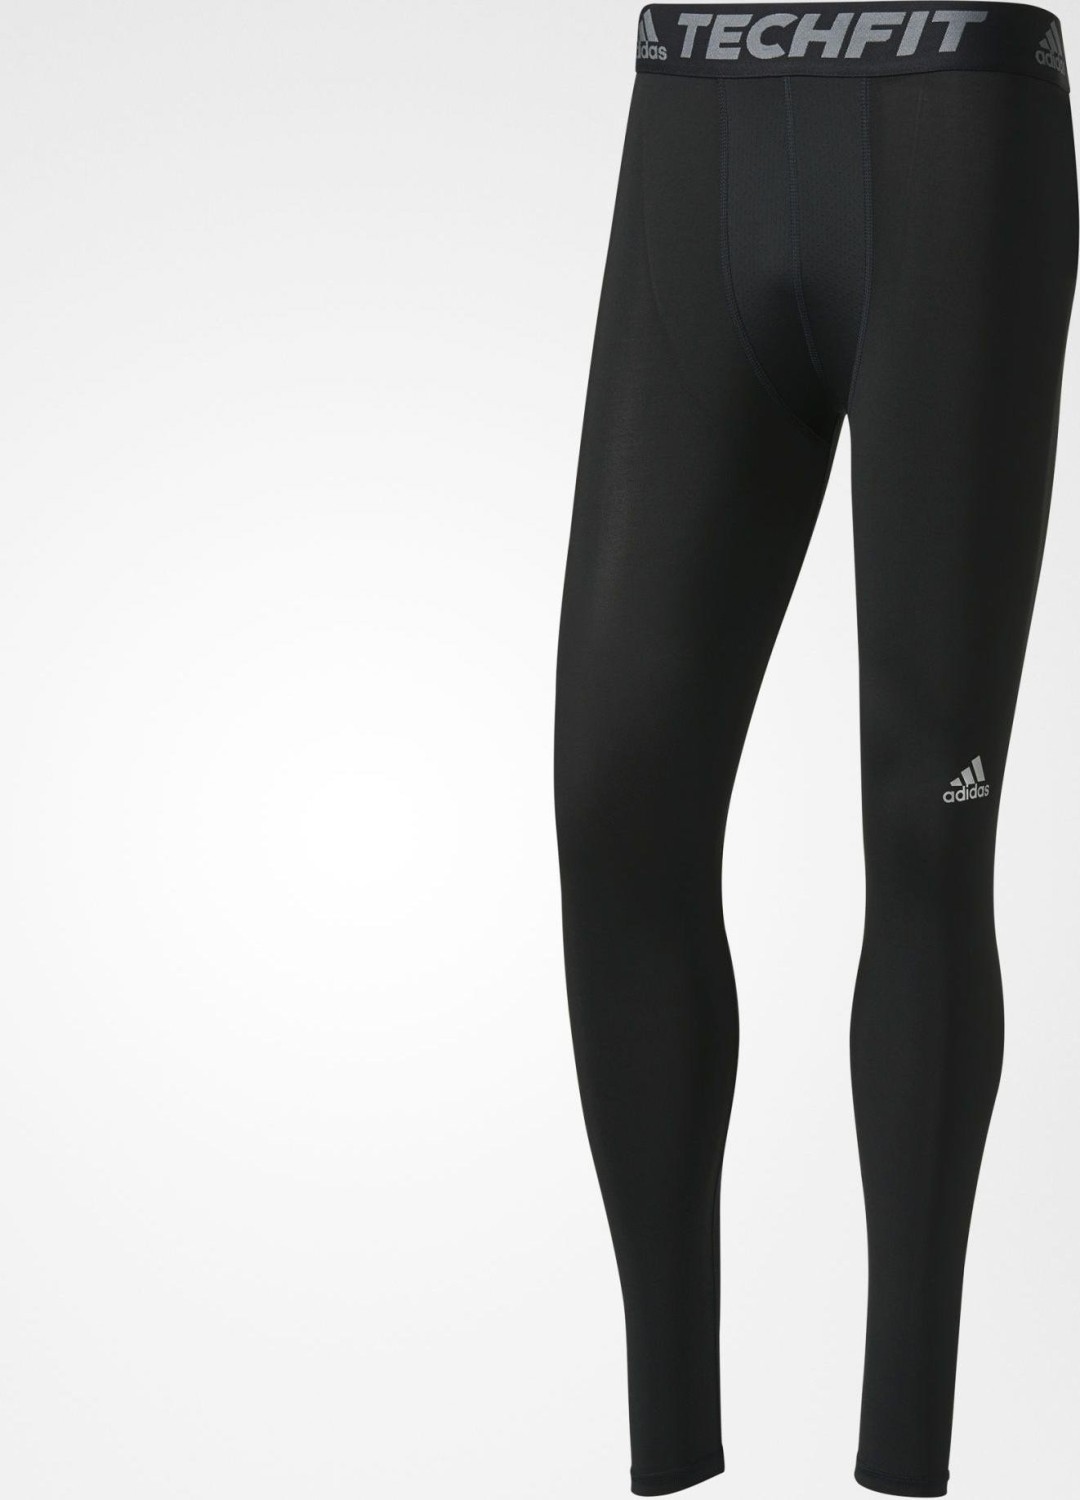 adidas Techfit Base Tights pant long black (men) (AI3370)